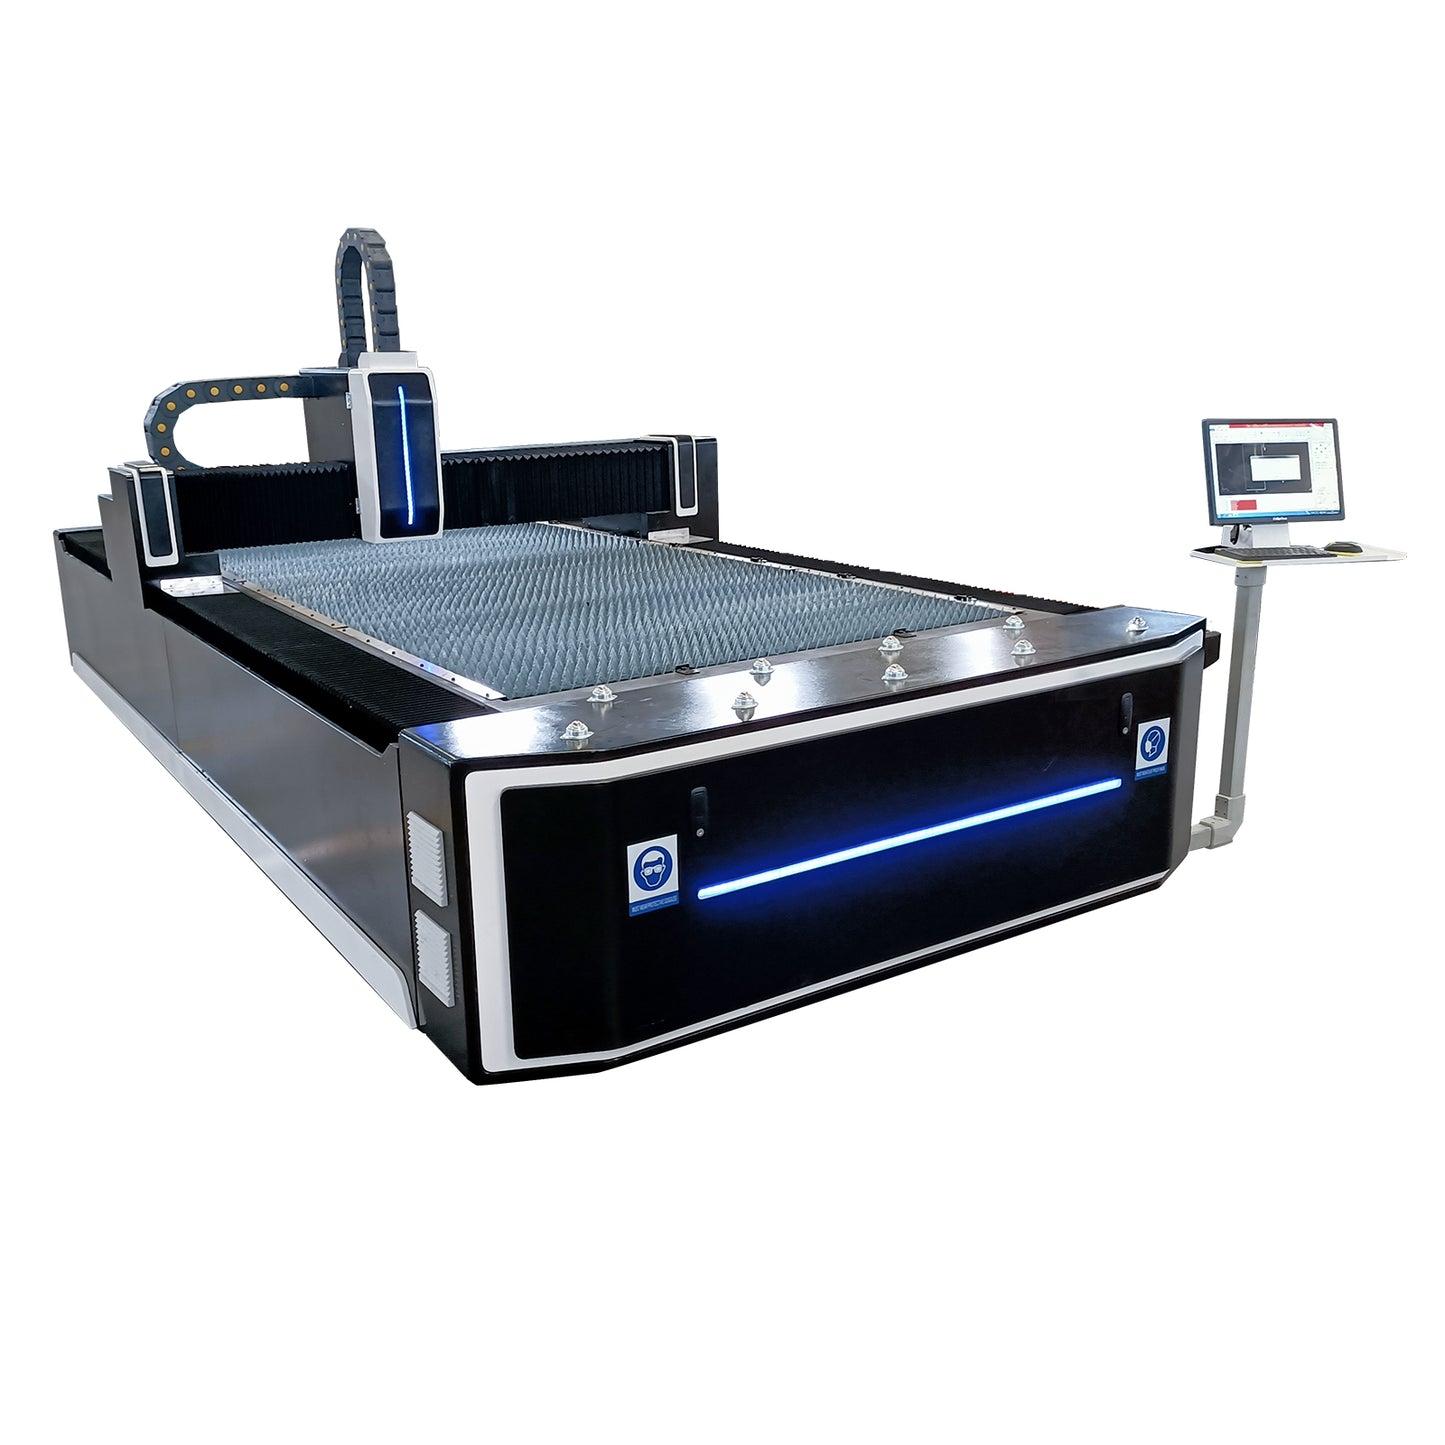 Fiber Laser Cutting Machine Sheet Metal High Precision Laser Cutting Engraving Machine with1500*3000mm Workbed SFX-1530